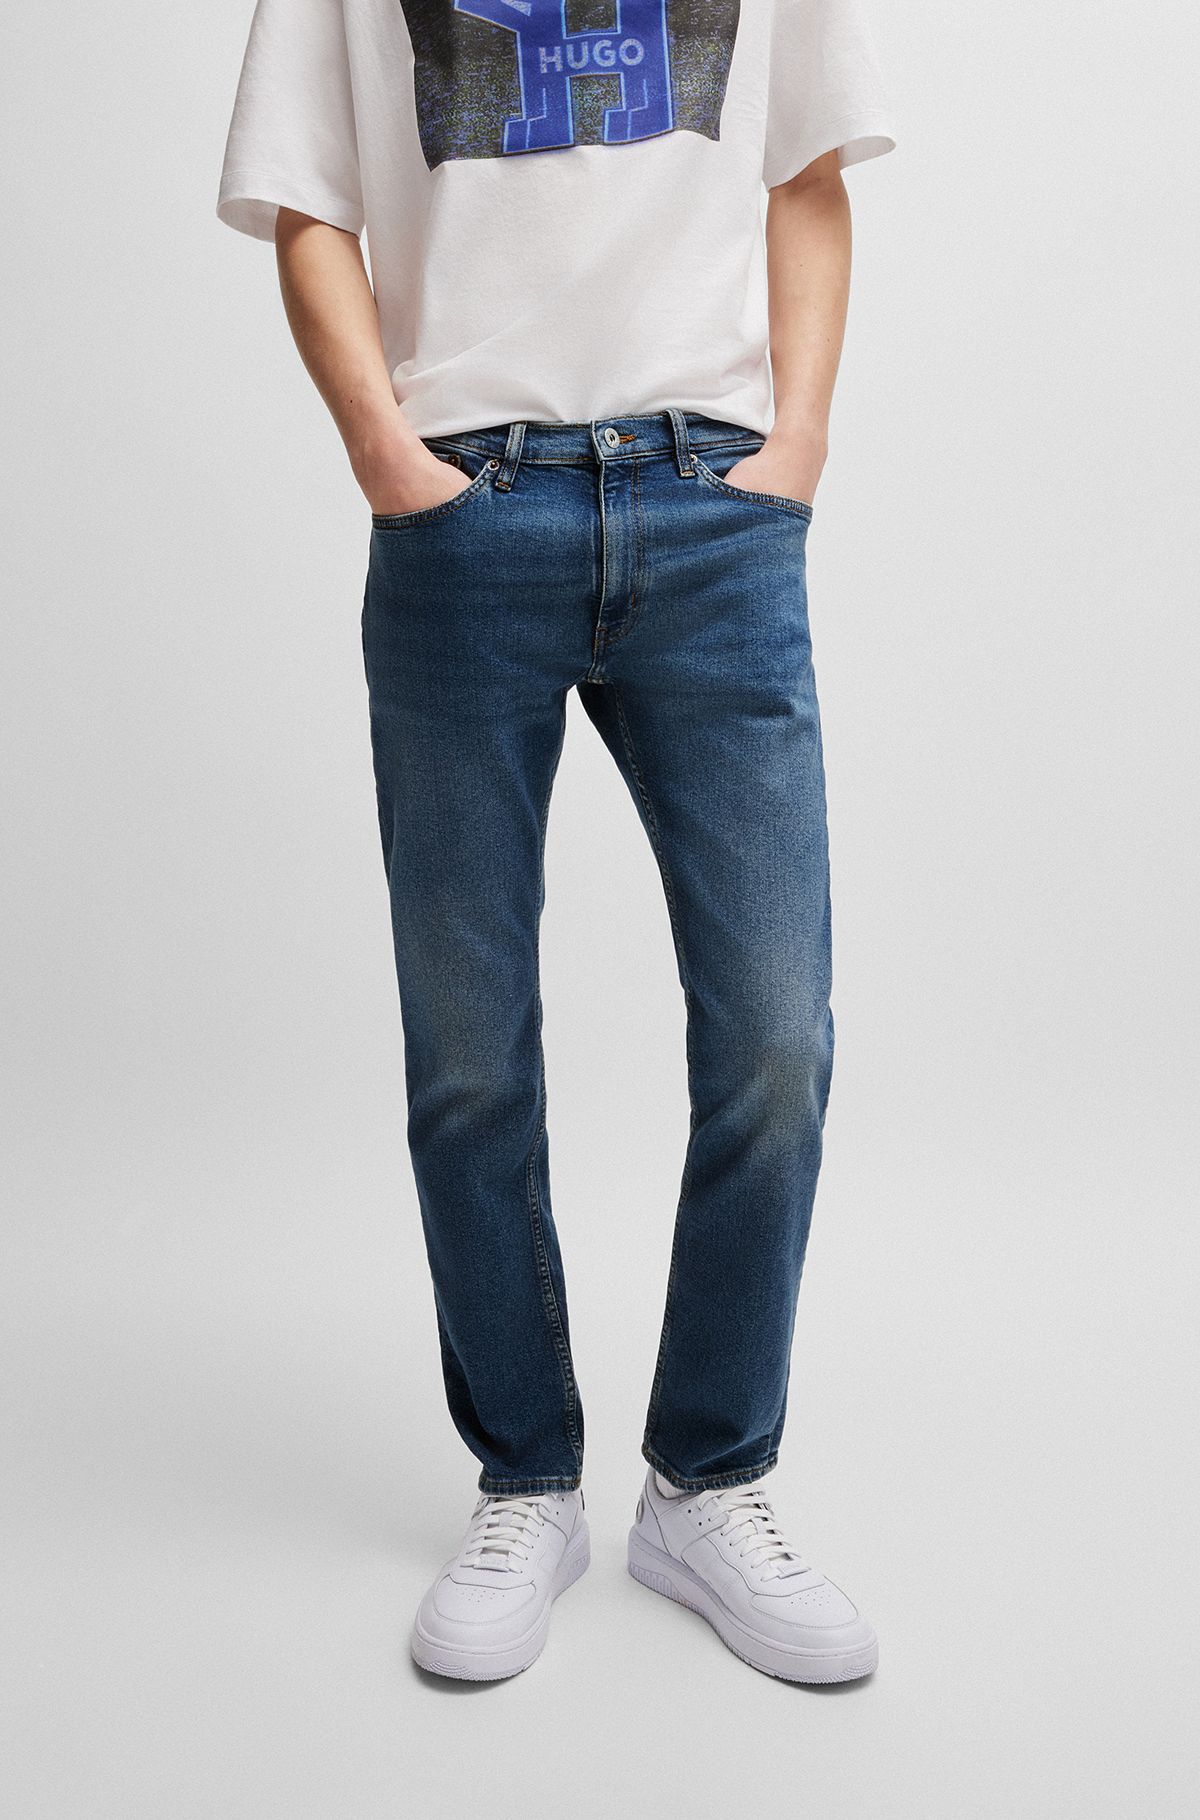 Extra-slim-fit jeans in navy stonewashed stretch denim, Dark Blue